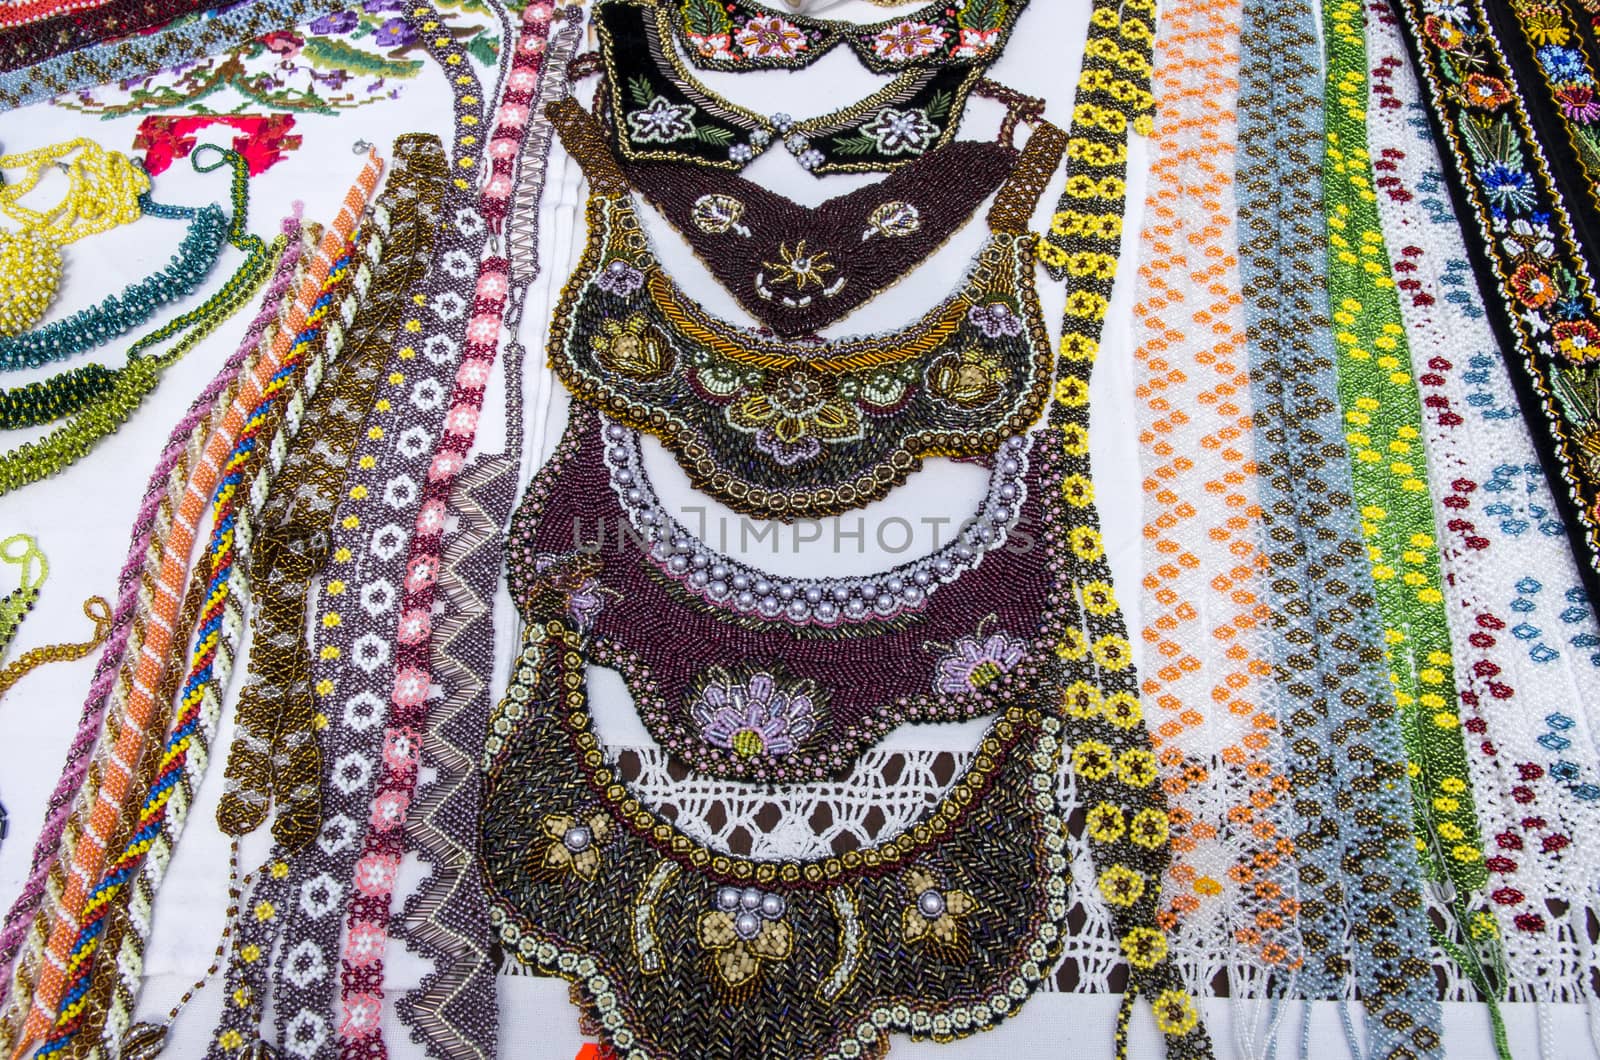 Traditional souvenir shop: neck accesories for sale.